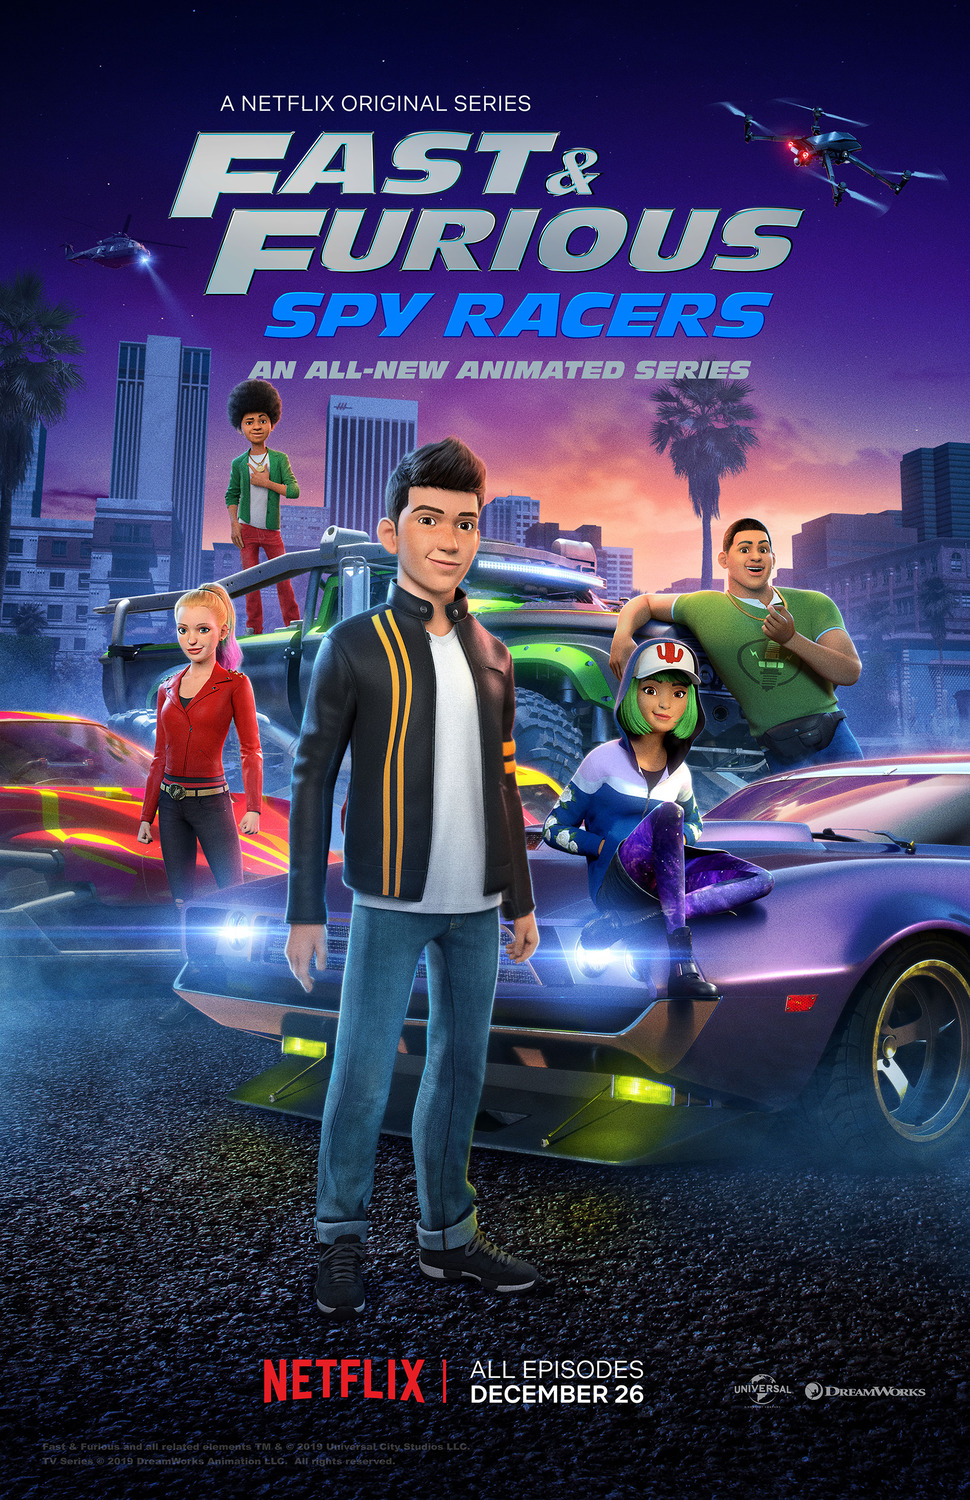 ดูหนังออนไลน์ฟรี Fast & Furious Spy Racers Season 6 EP1 เร็วแรงทะลุนรก ซิ่งสยบโลก ซีซั่น 6 ตอนที่ 1